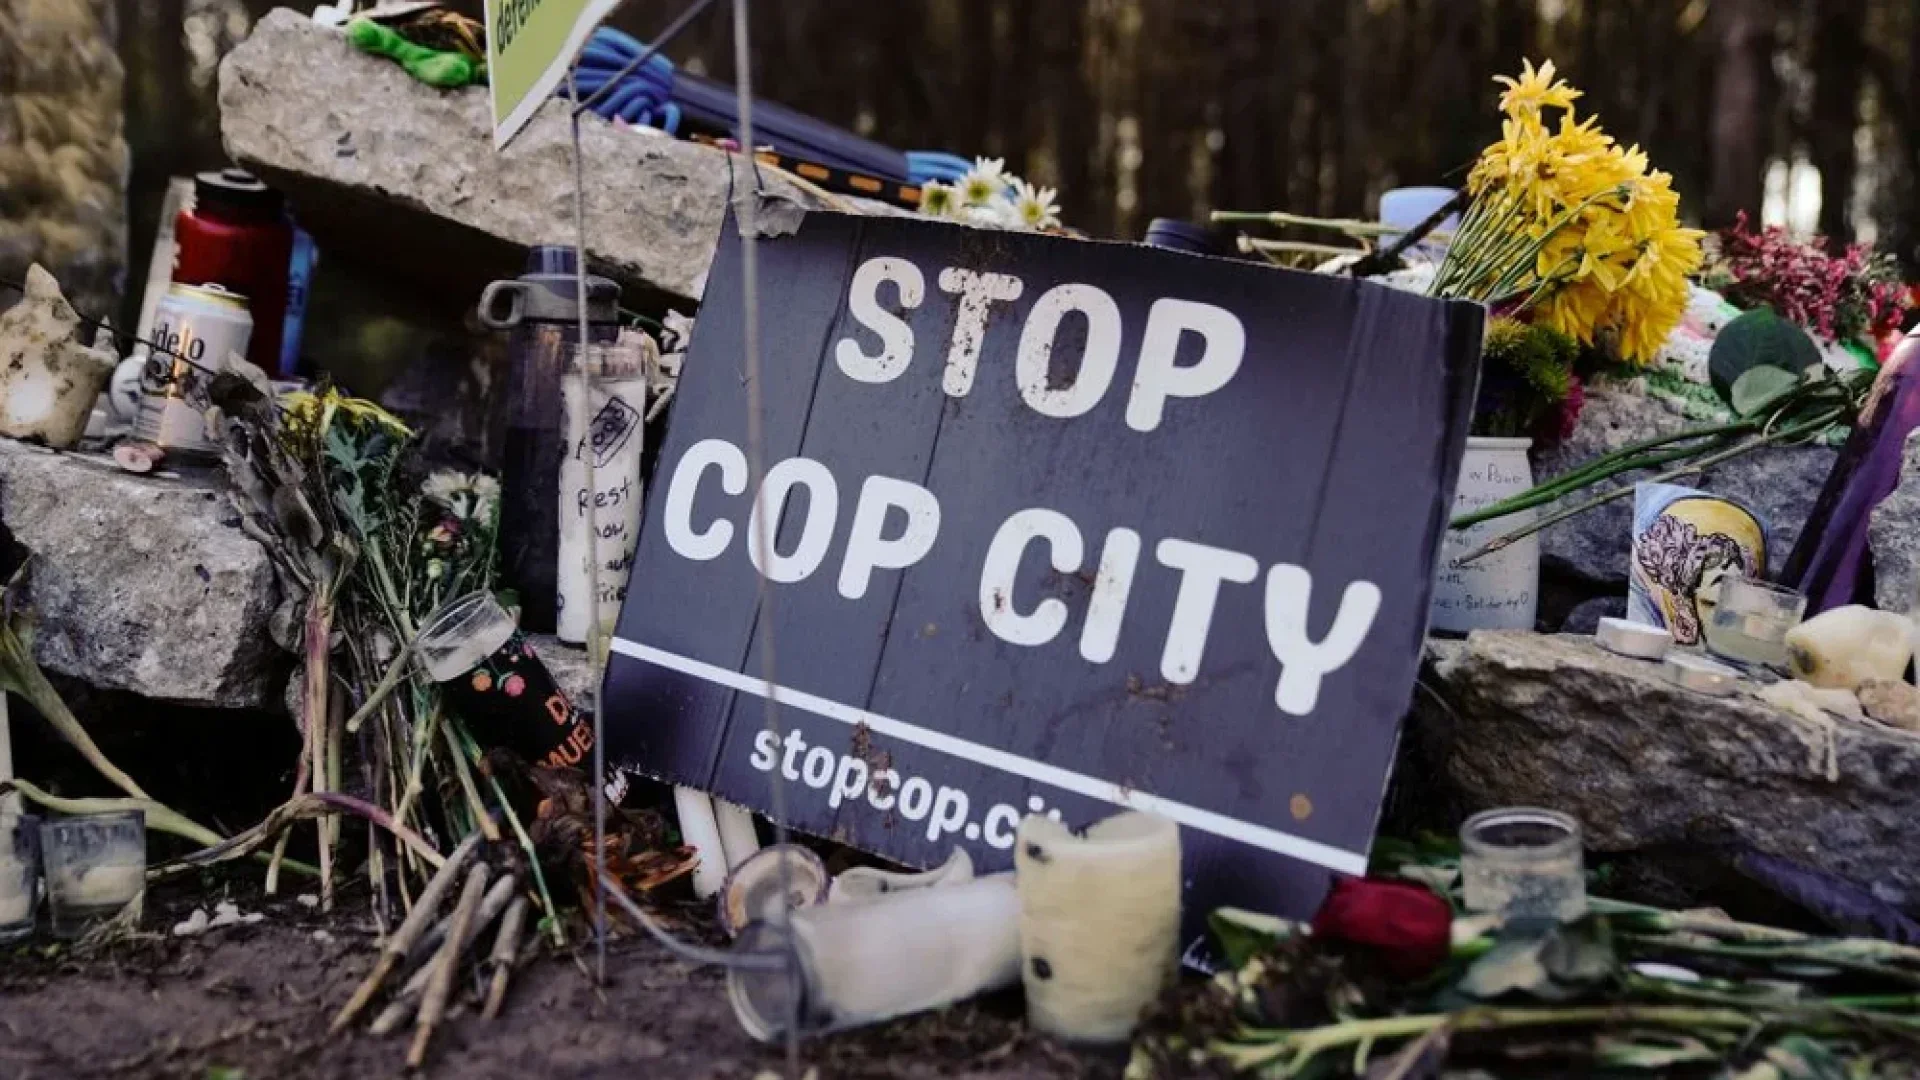 Atlanta Police Arrest Organizers Behind Bail Fund For "Cop City" Protestors